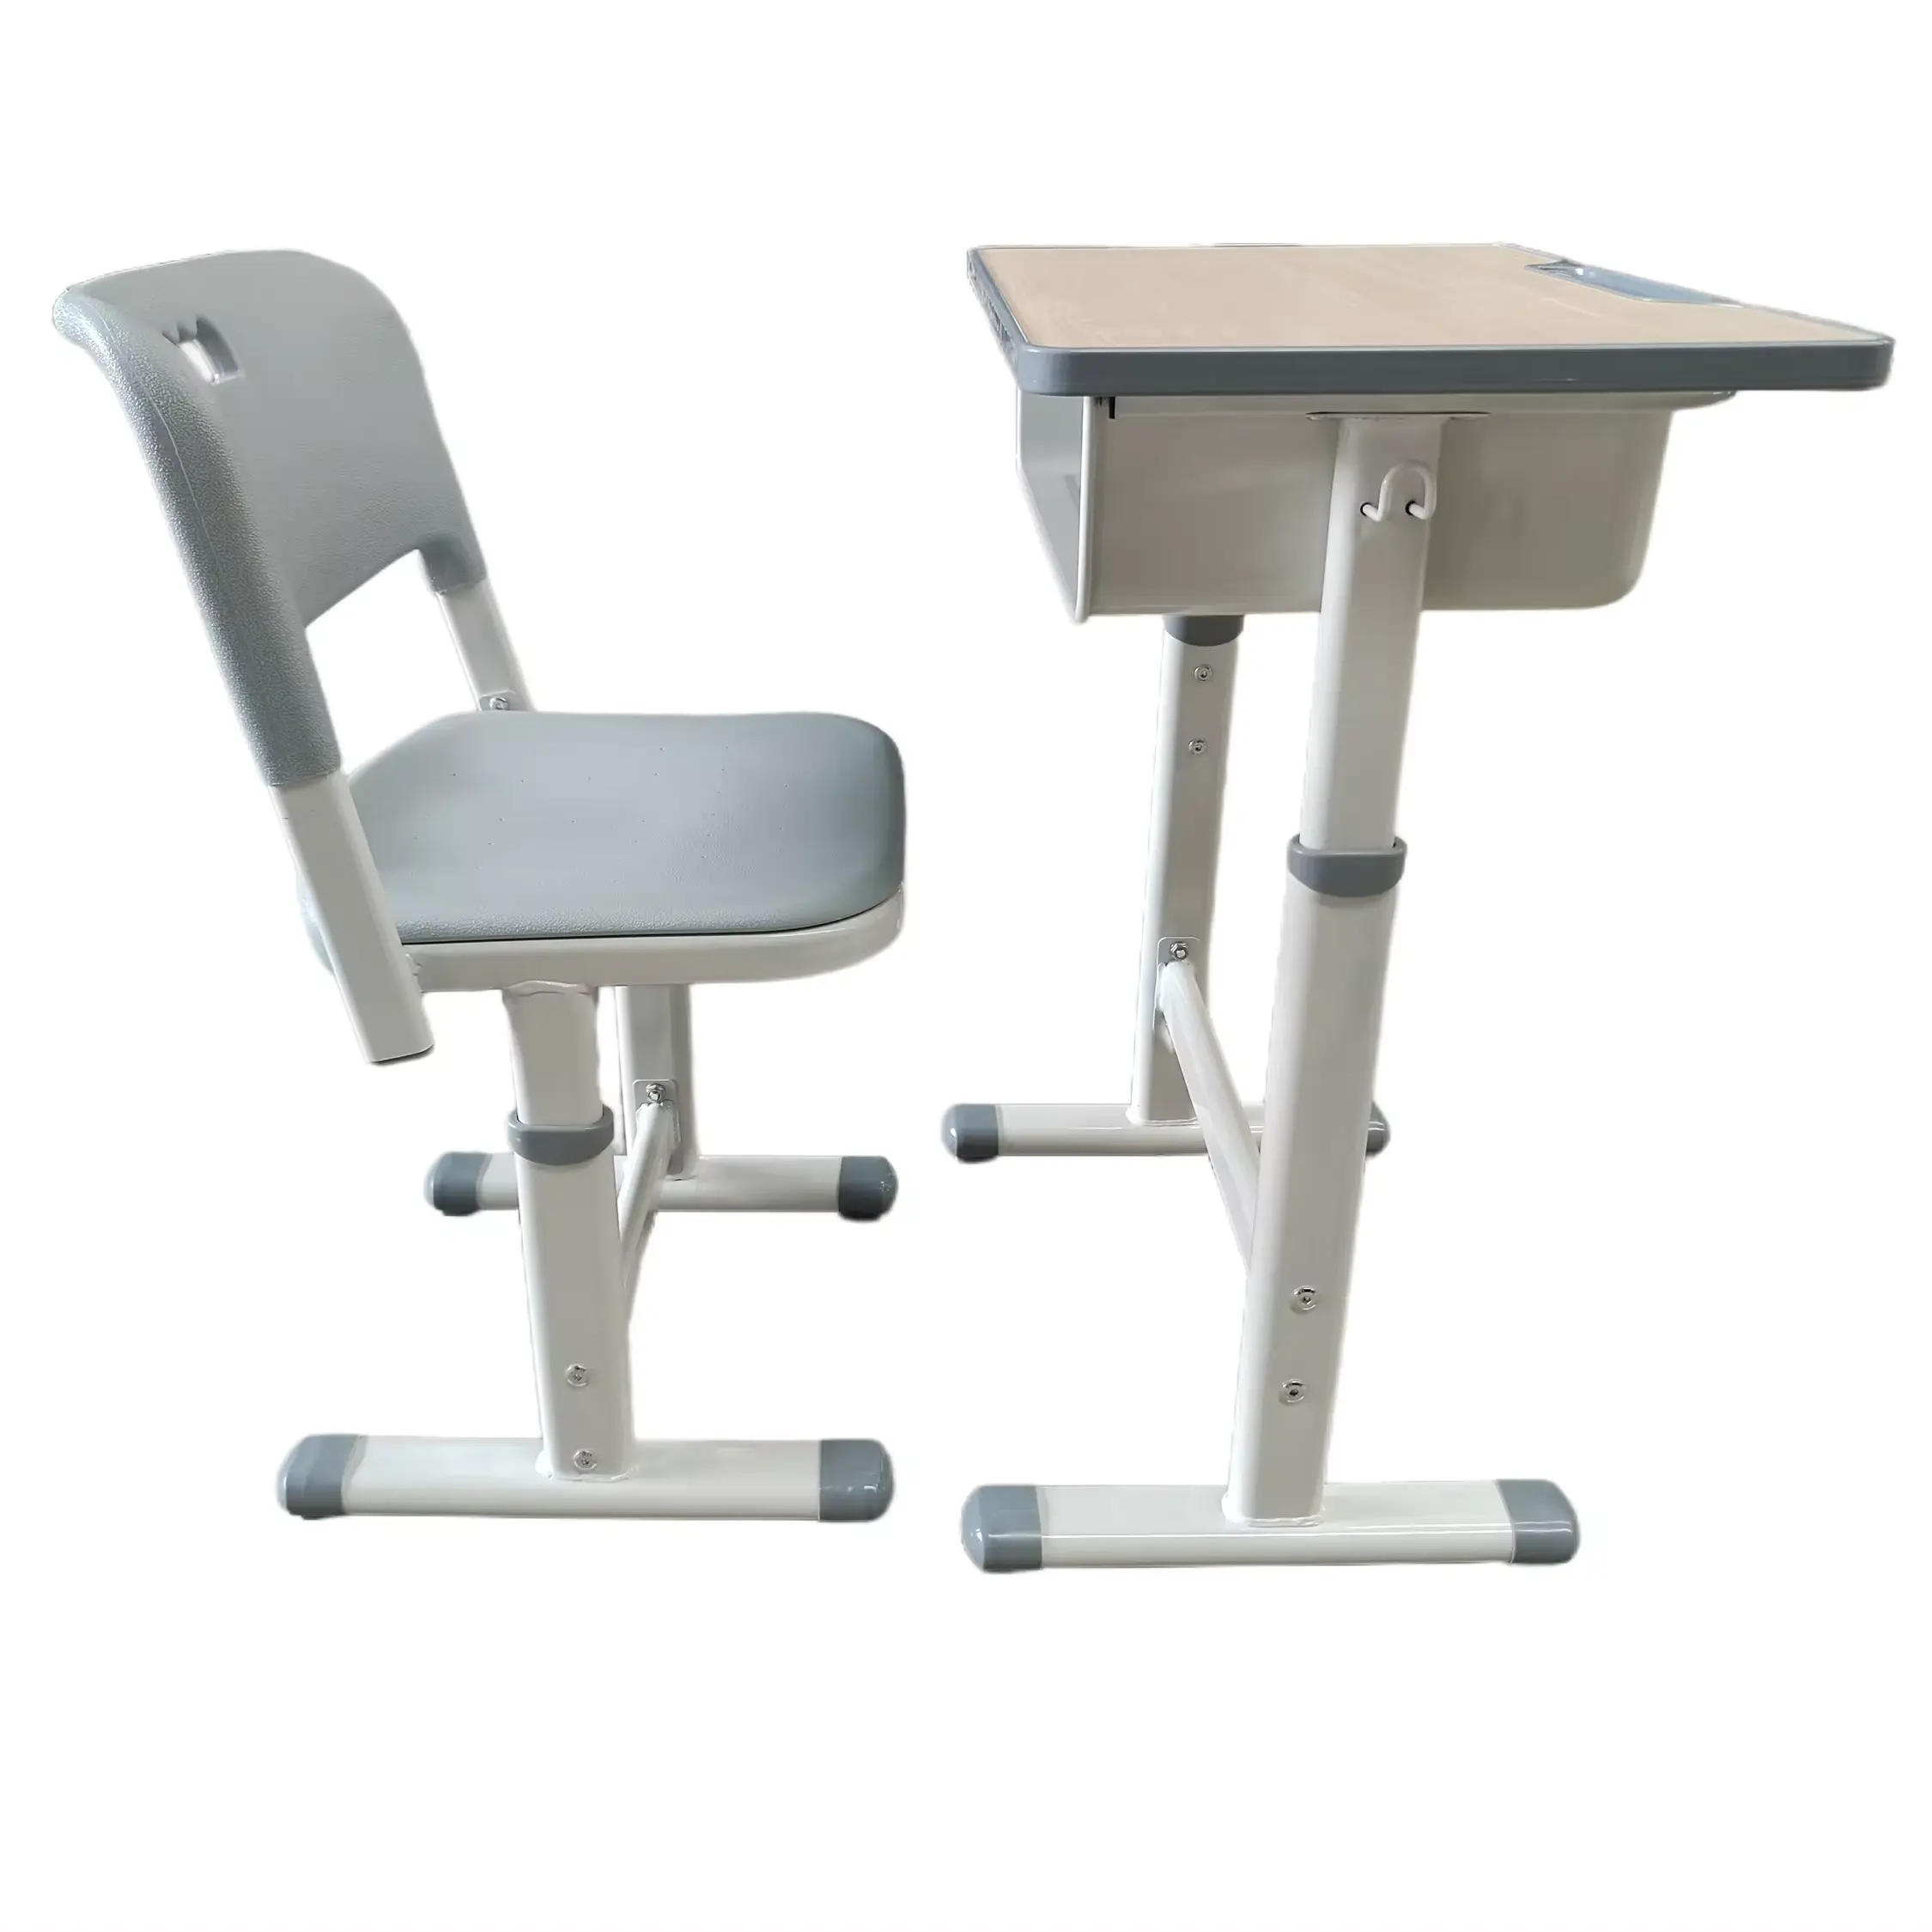 教室やモール用の小中学校用の高さ調節可能なデスクと椅子学生用家具セット